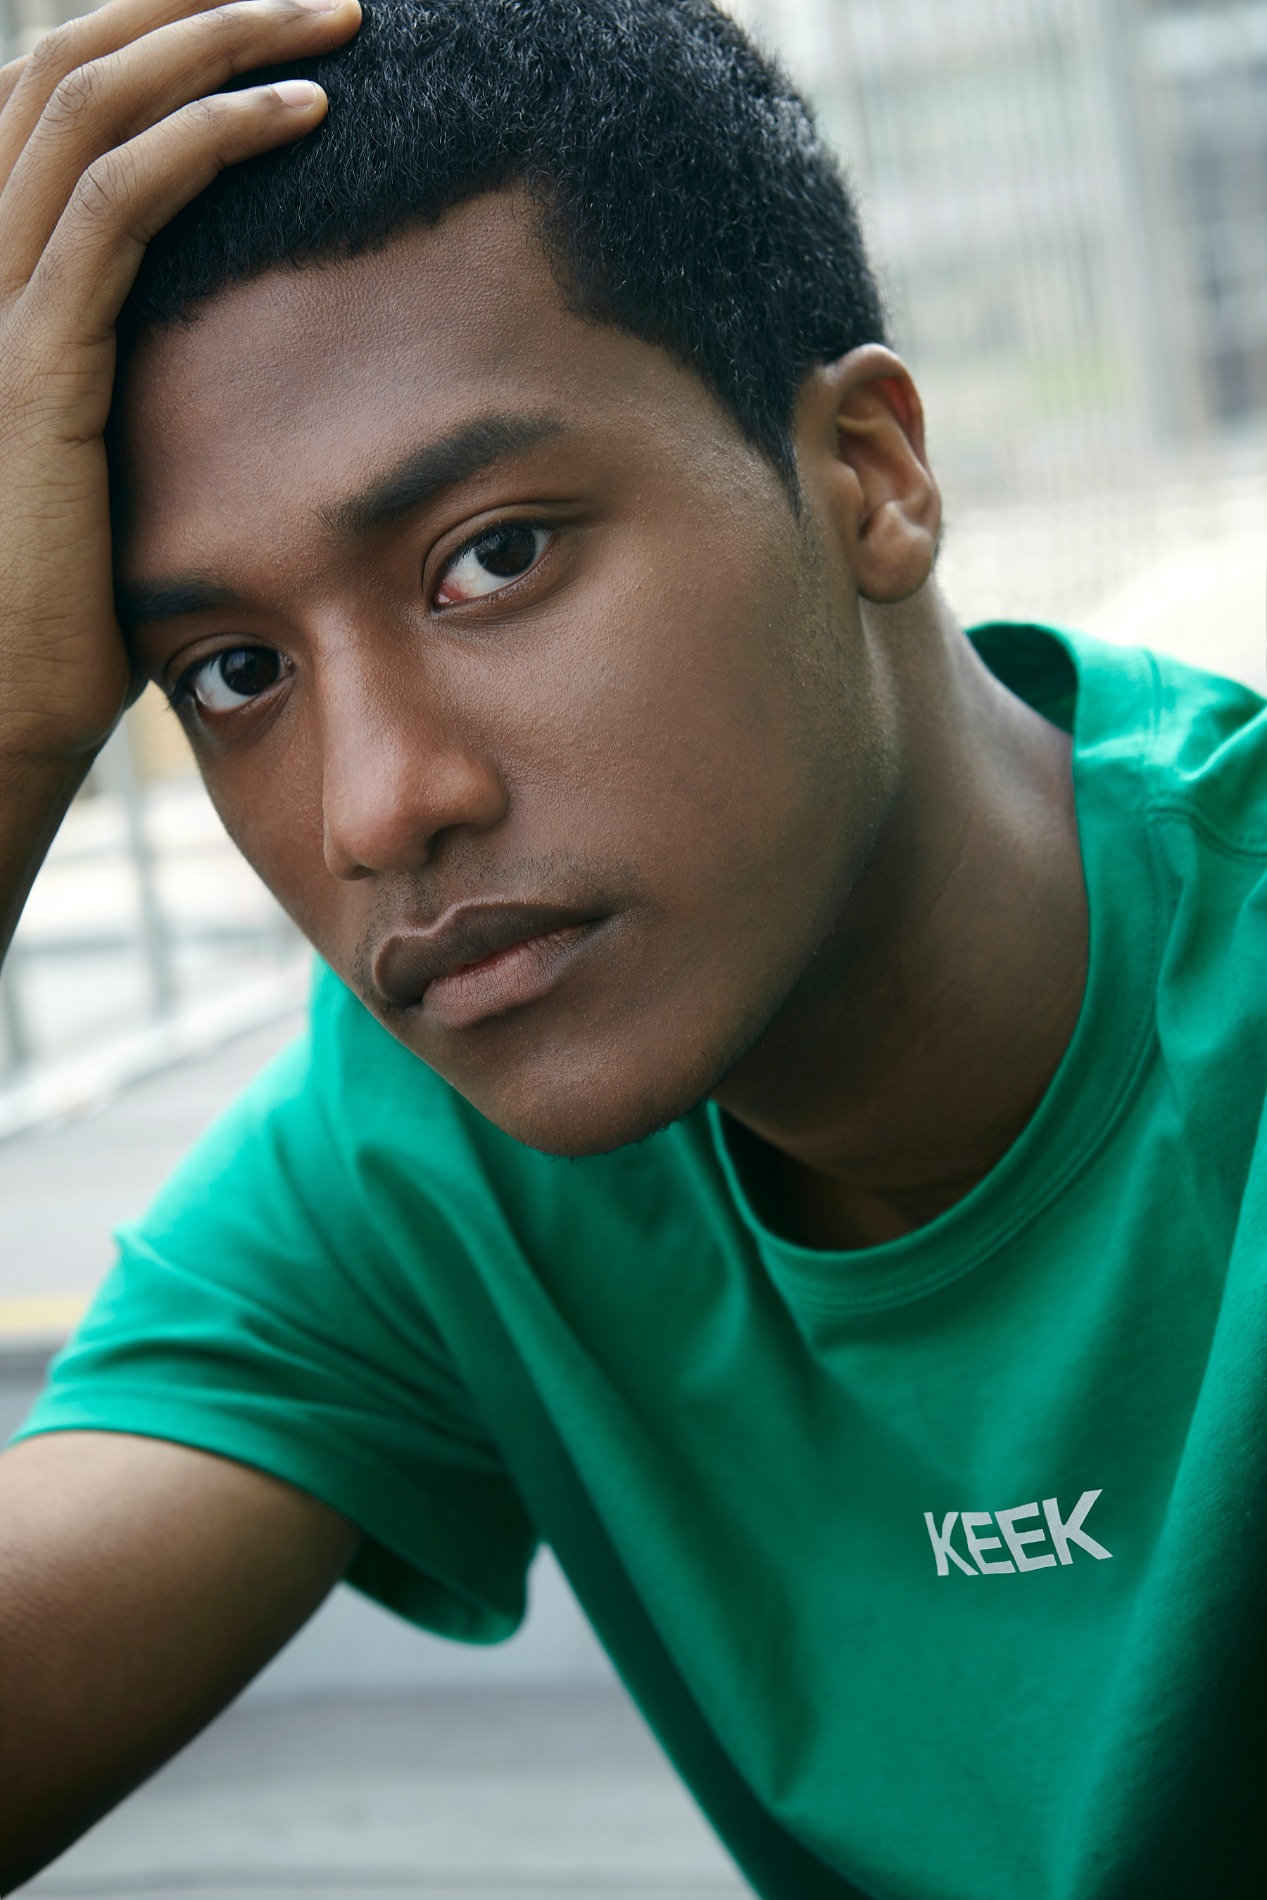 keek [Unisex] Logo Graphic T-shirts - Green 스트릿패션 유니섹스브랜드 커플시밀러룩 남자쇼핑몰 여성의류쇼핑몰 후드티 힙색